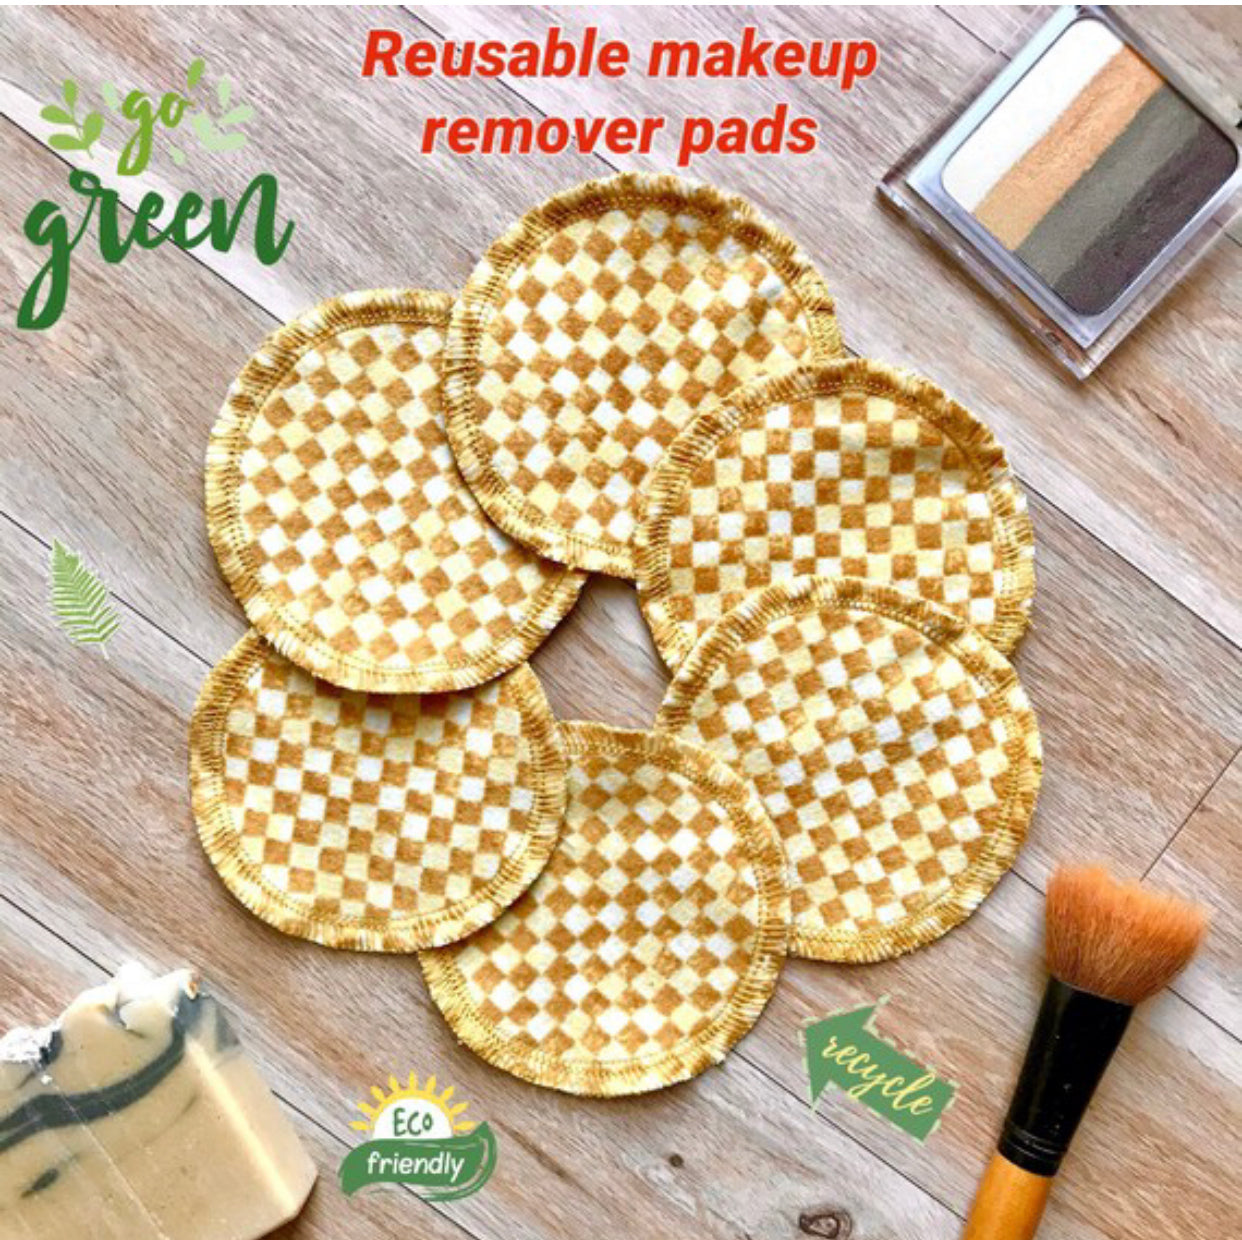 6 Reusable Face rounds/Makeup pads remover